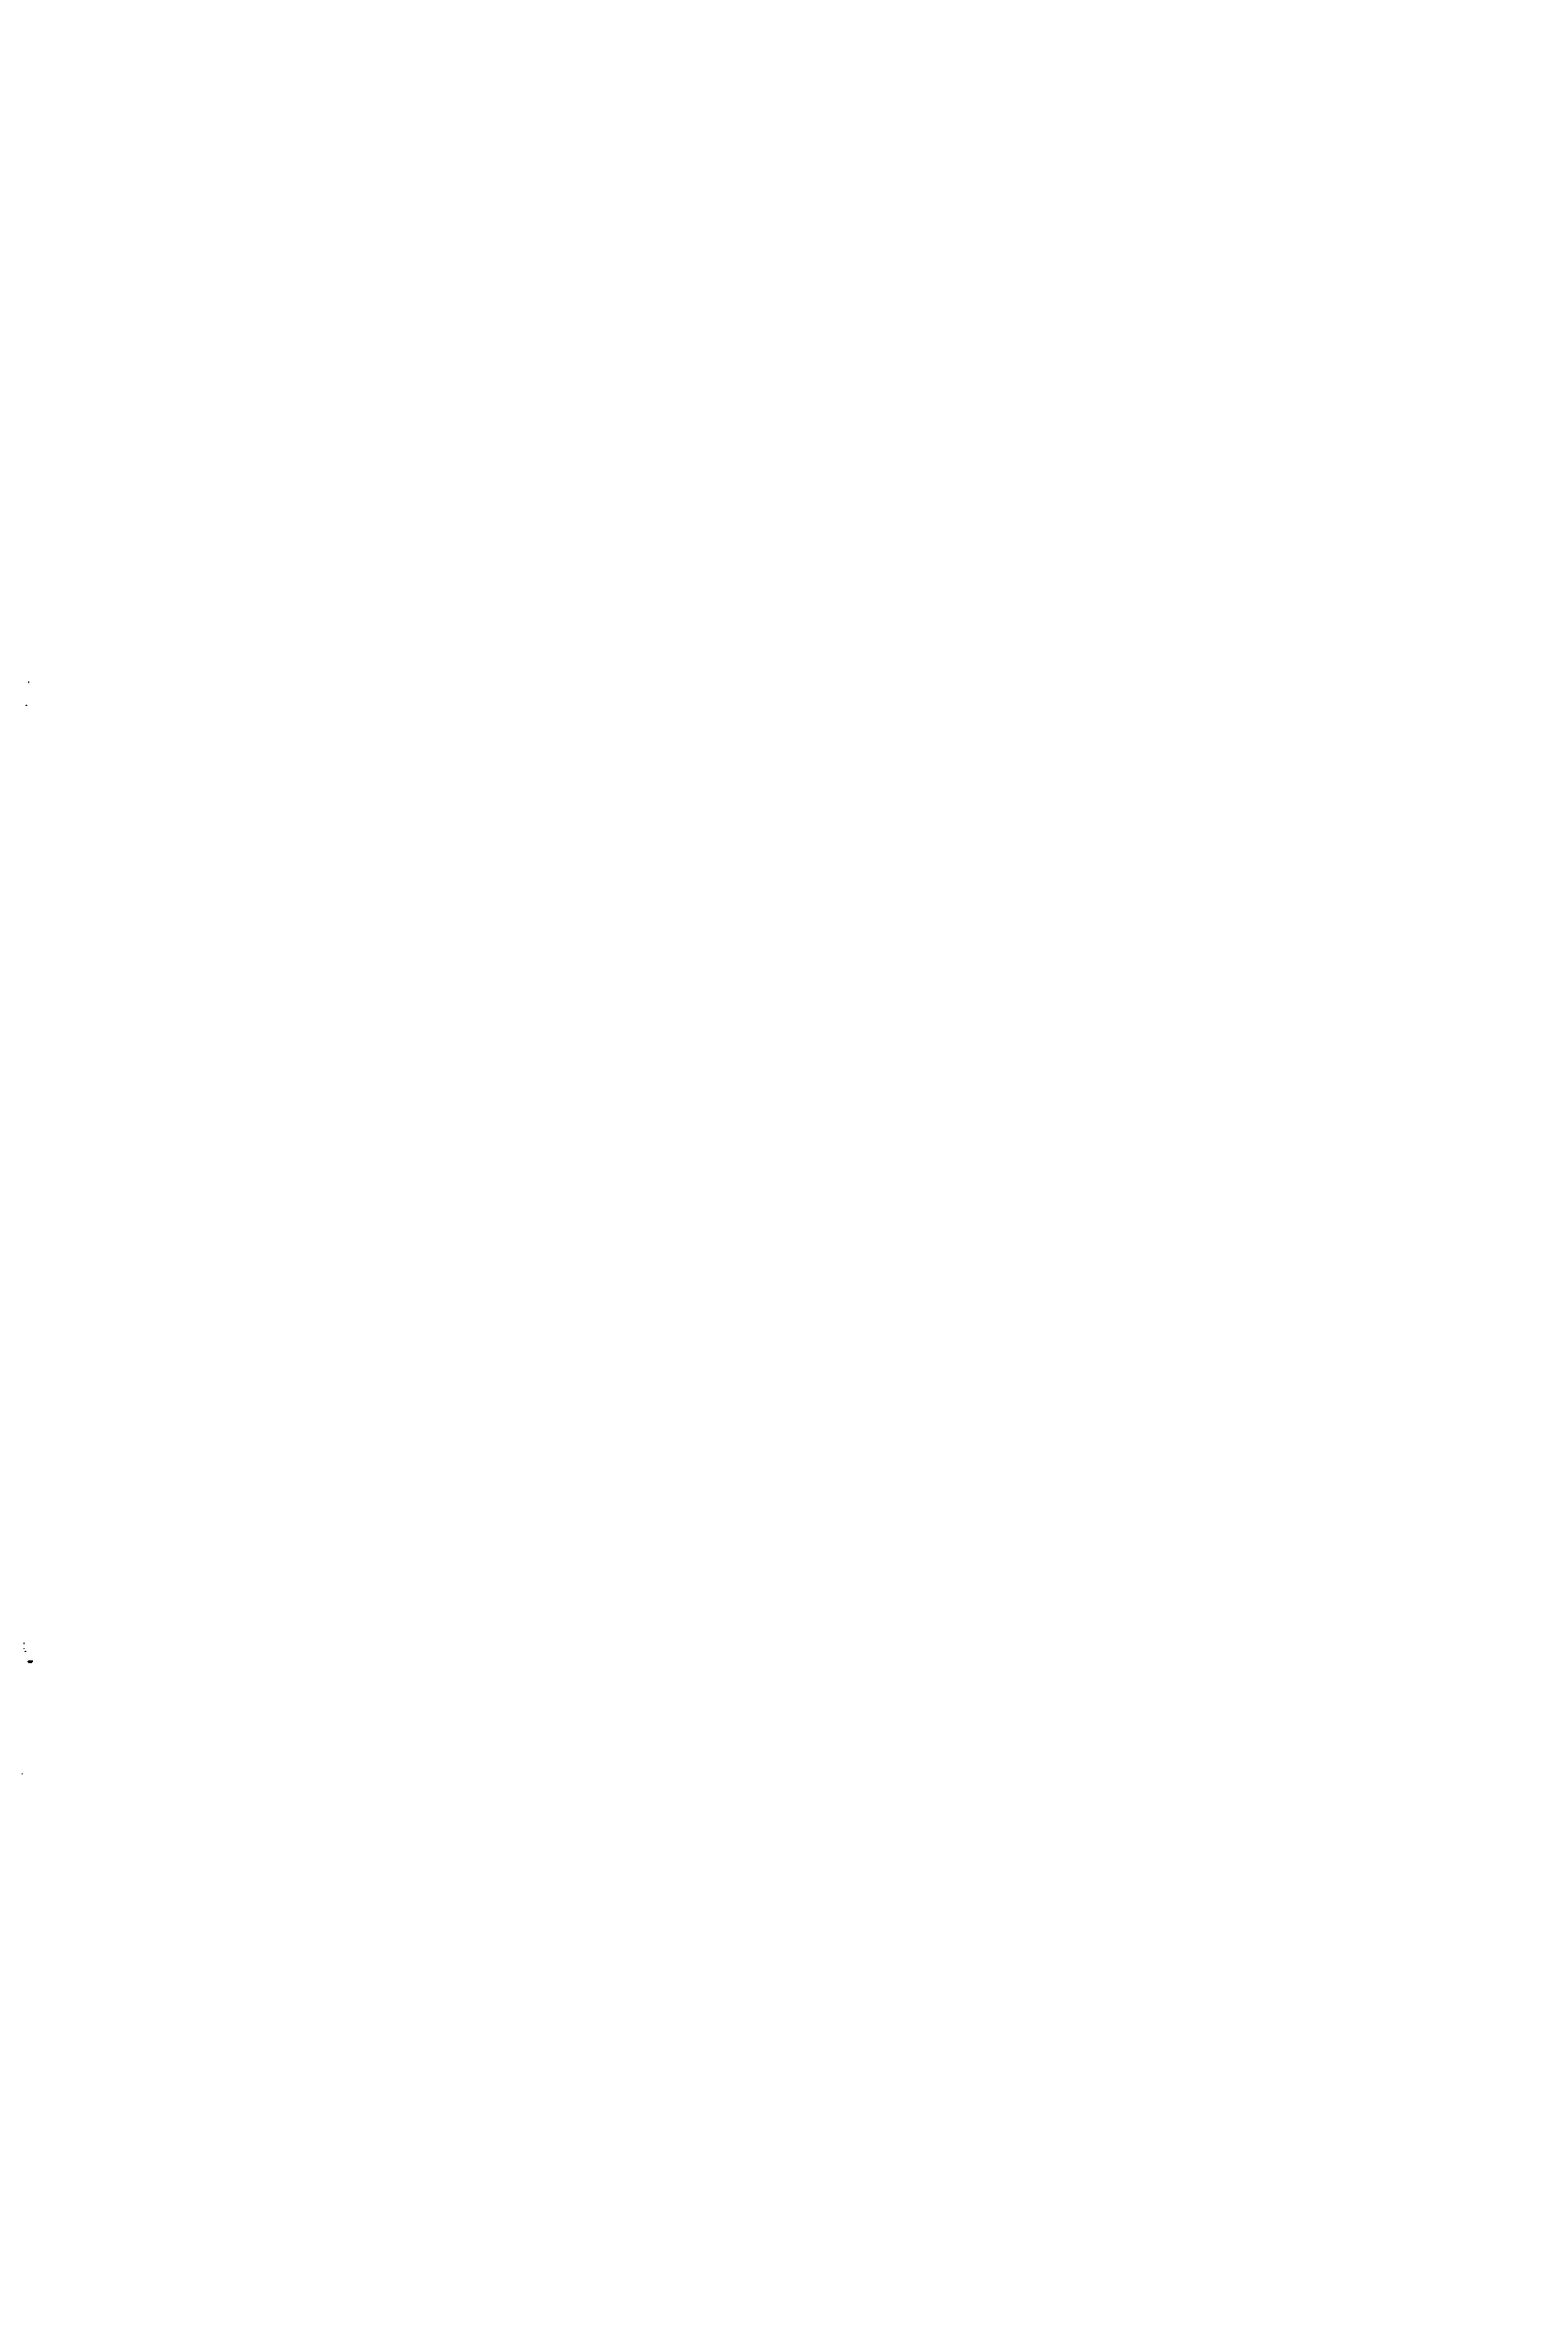 Рис. 120. Лауэграммы монокристалла 8п-У/7 а — до нанесения покрытия б — через 5 час. после нанесения галлиевого покрытия 
